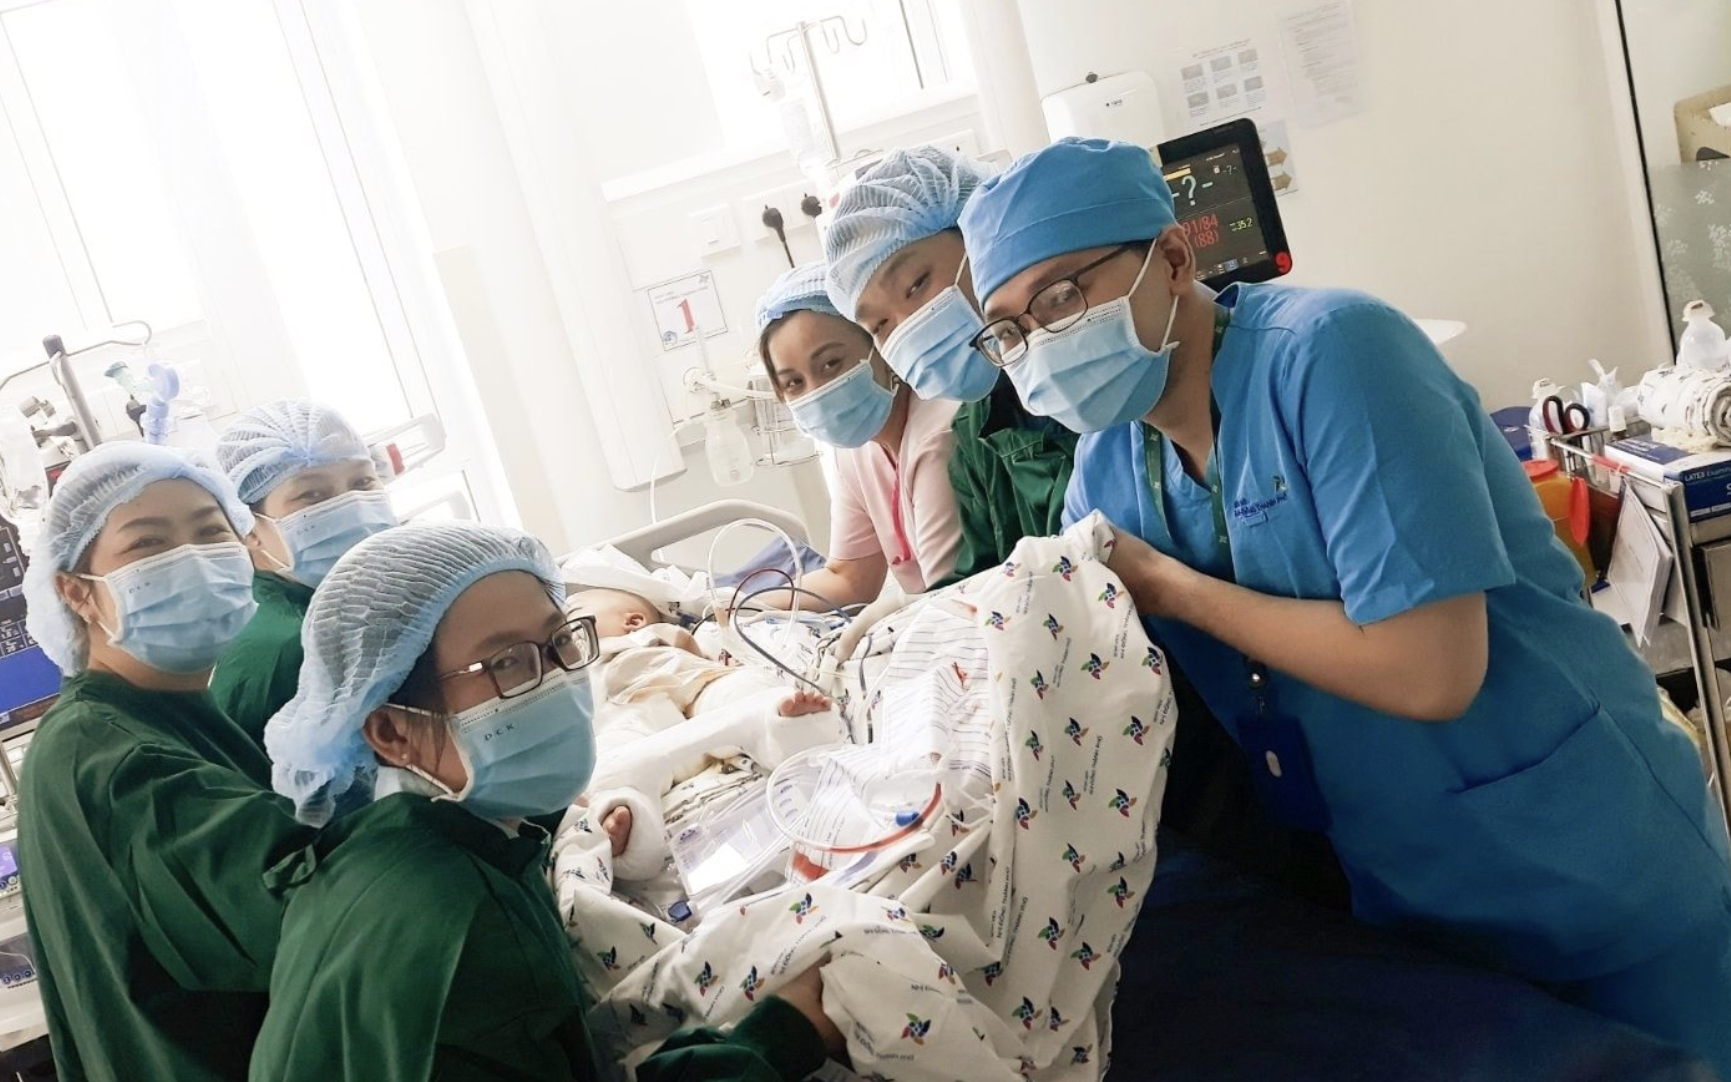 Xúc động cảnh bác sĩ chuyển nệm chống loét cho hai bé song sinh Trúc Nhi - Diệu Nhi, cố gắng không để nhiễm trùng